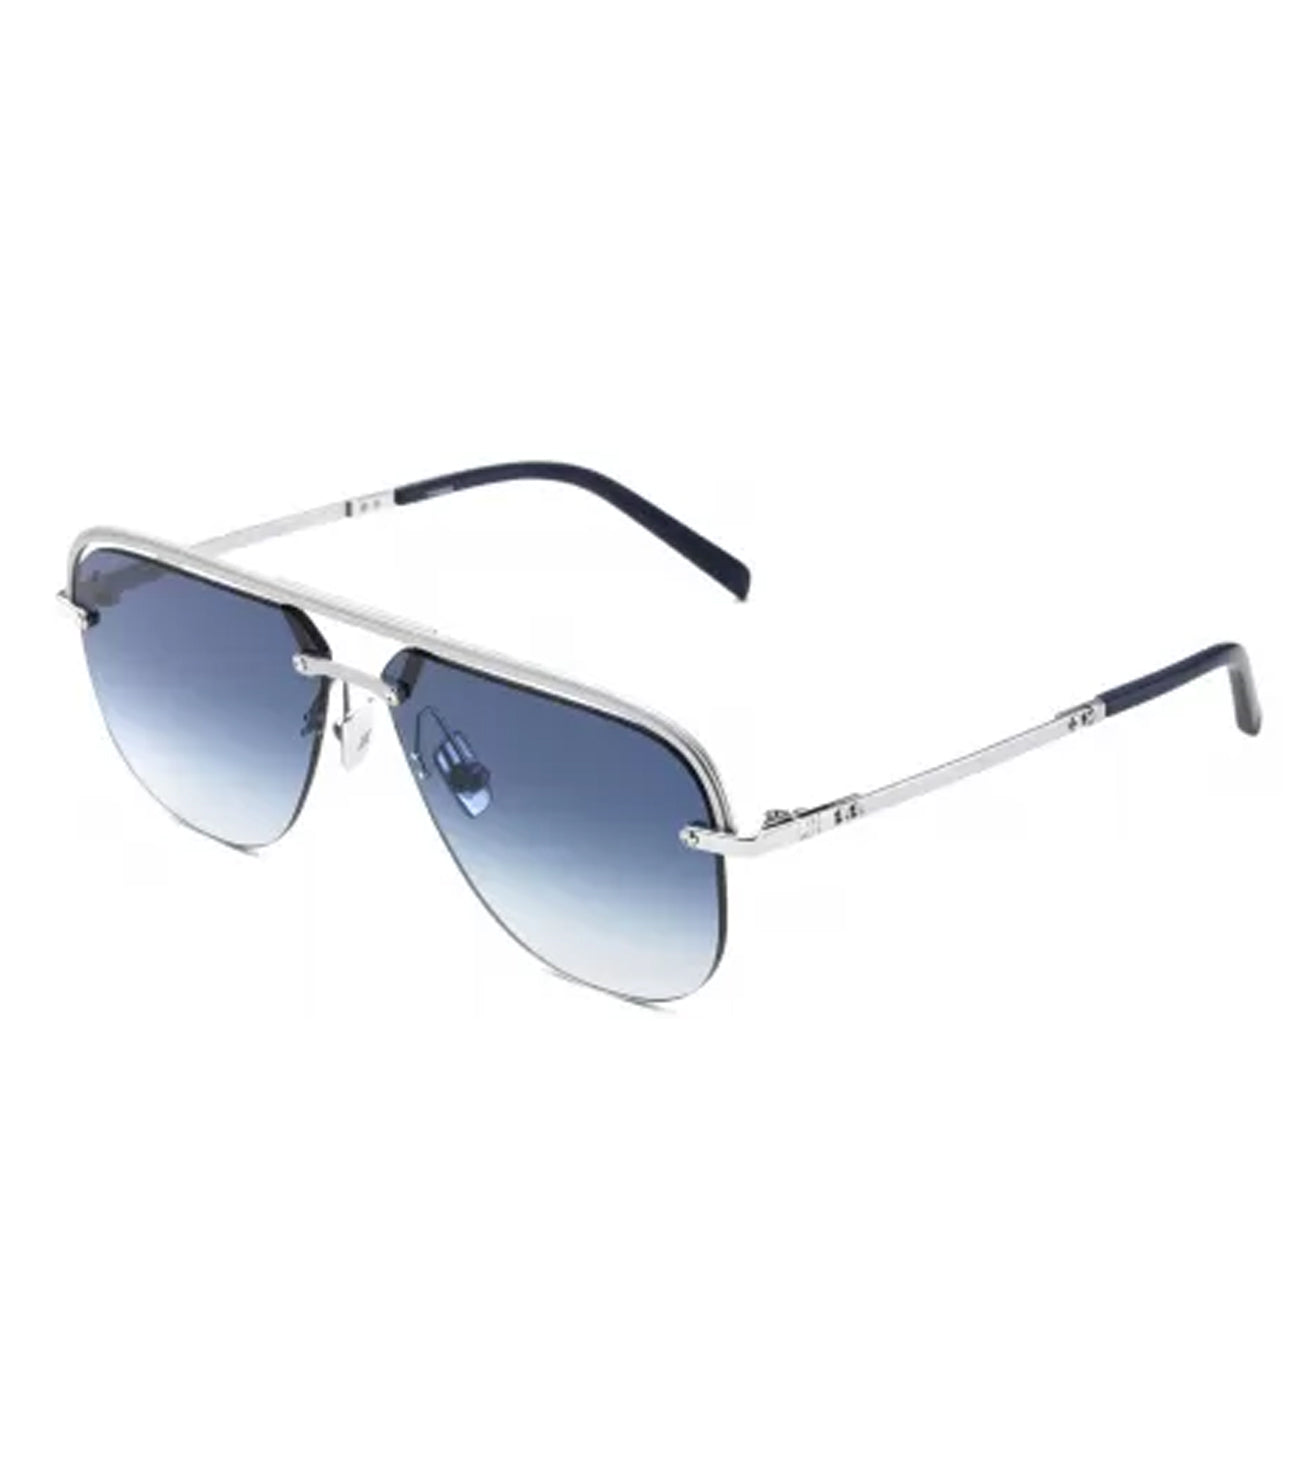 Hublot Unisex Blue Gradient Aviator Sunglasses